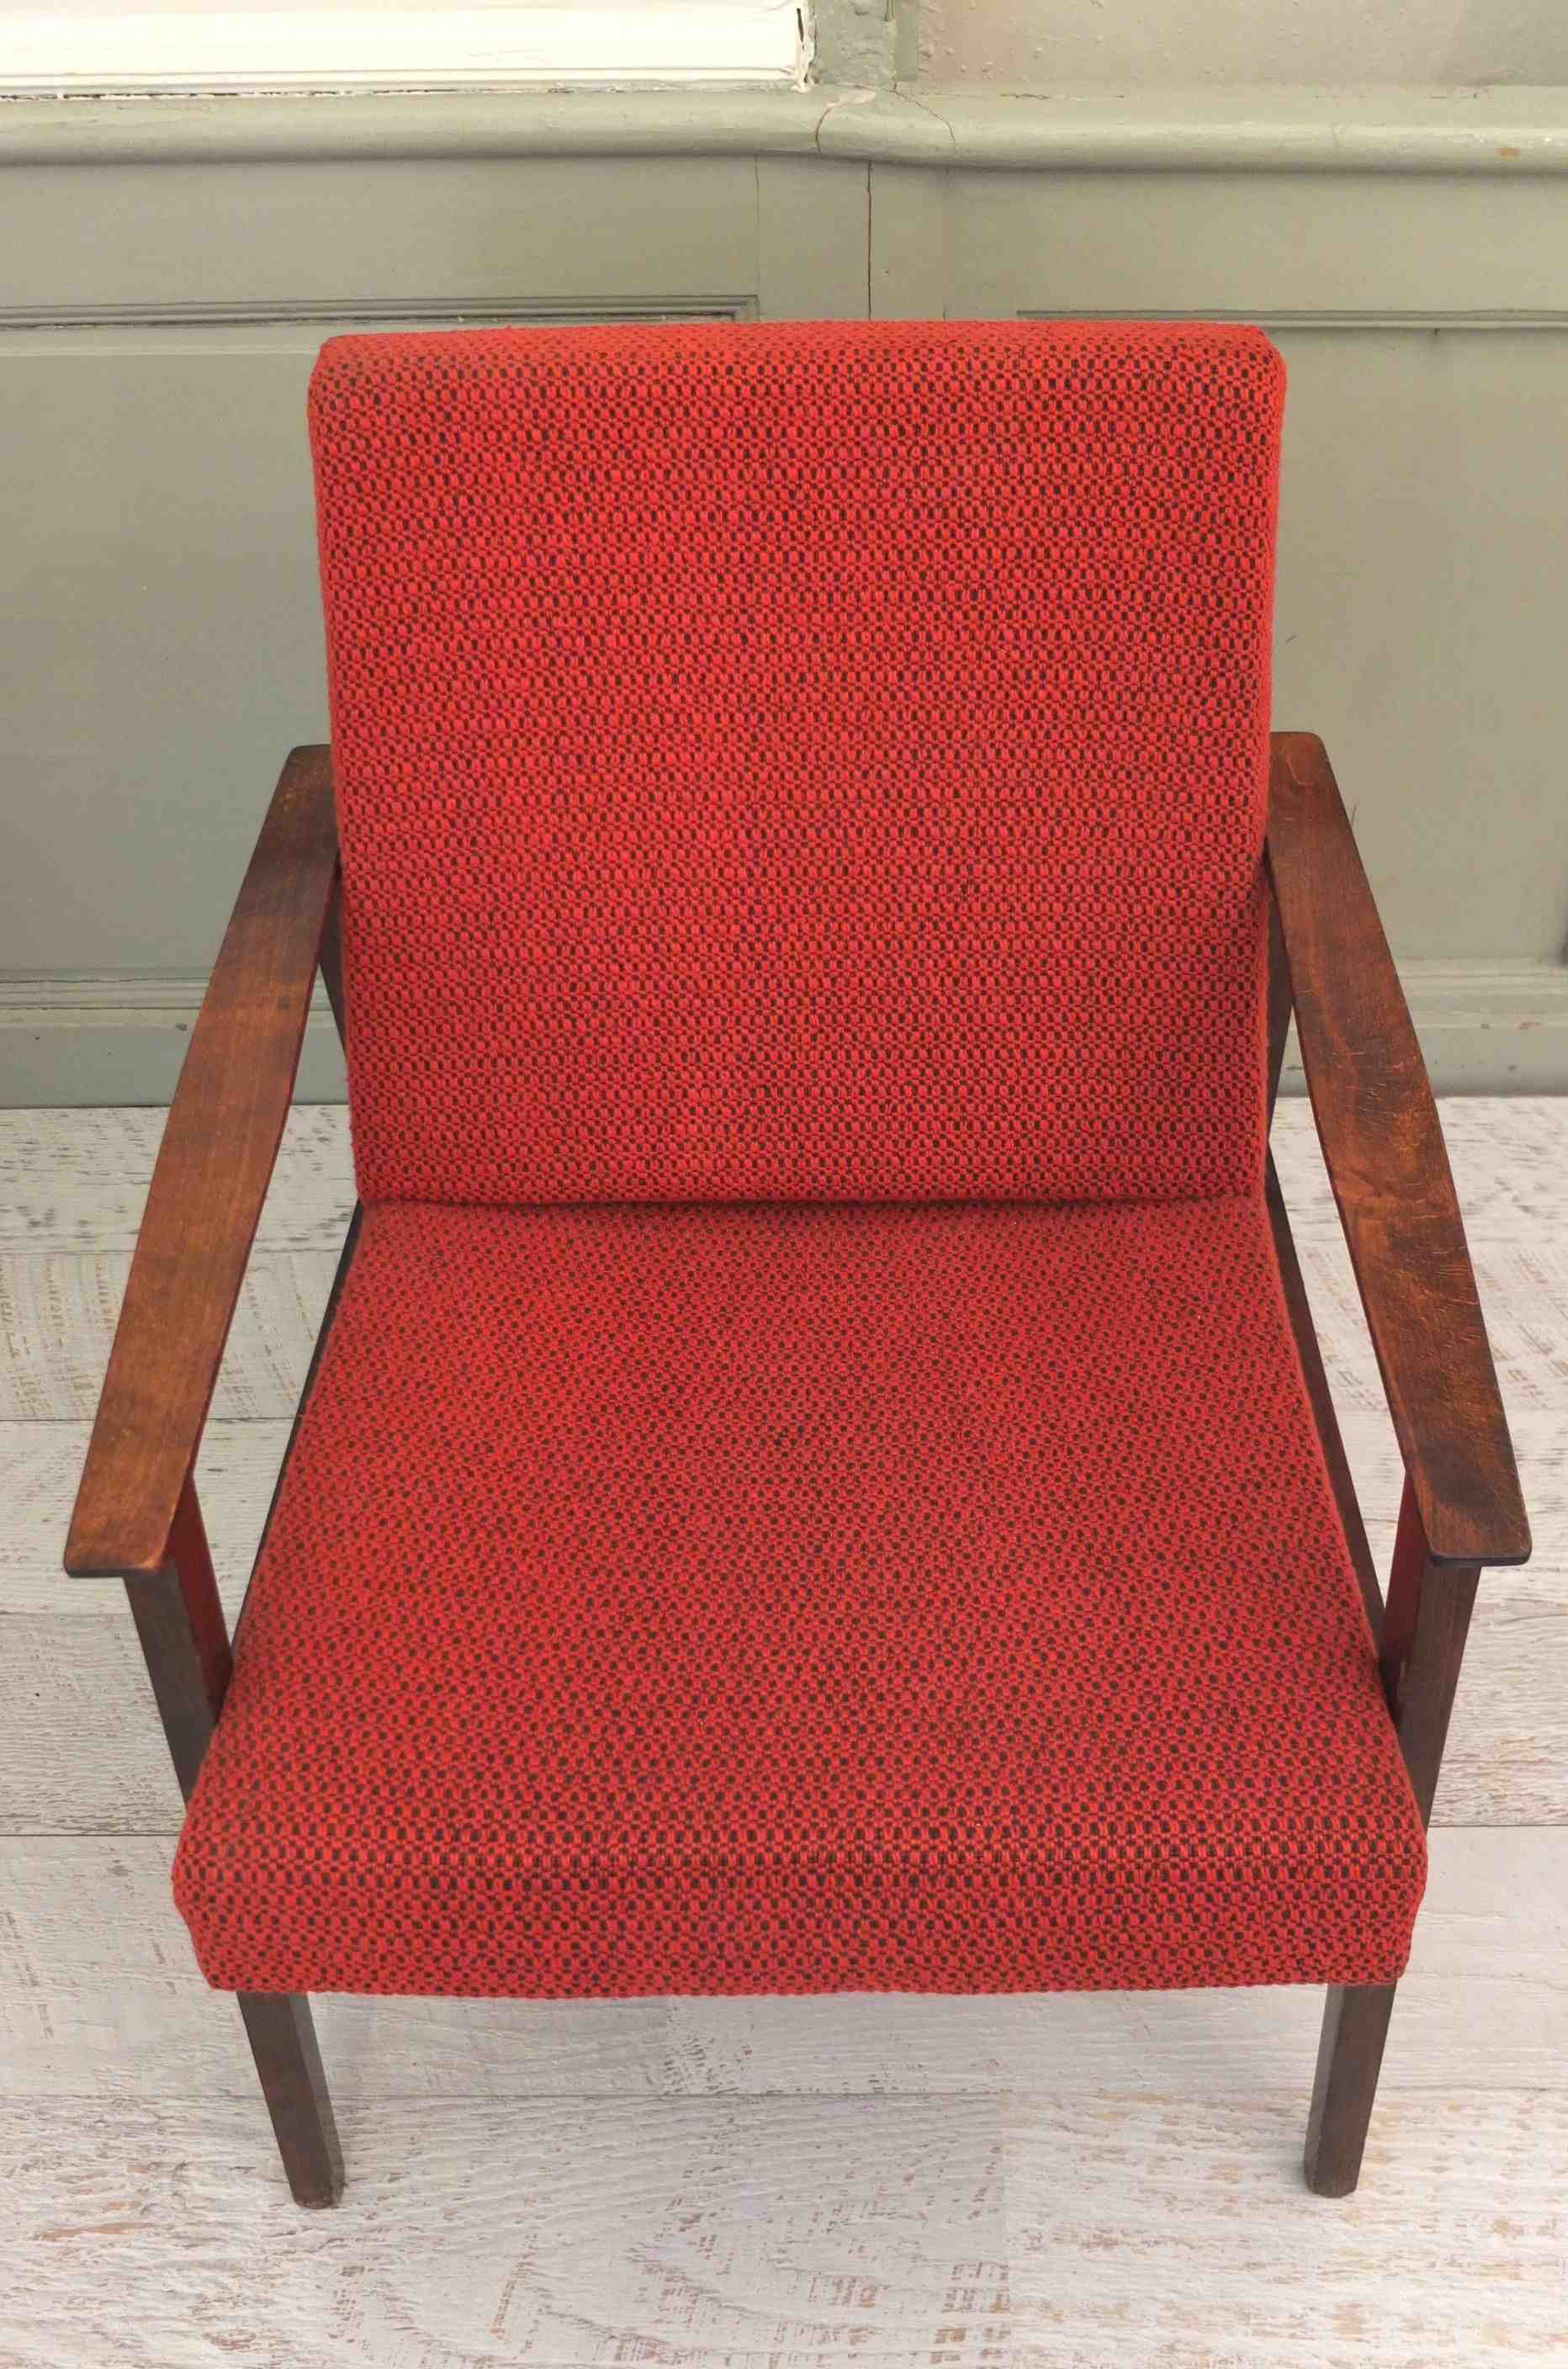 fauteuil midcentury aux lignes modernistes slavia vintage "Madison Avenue" 2